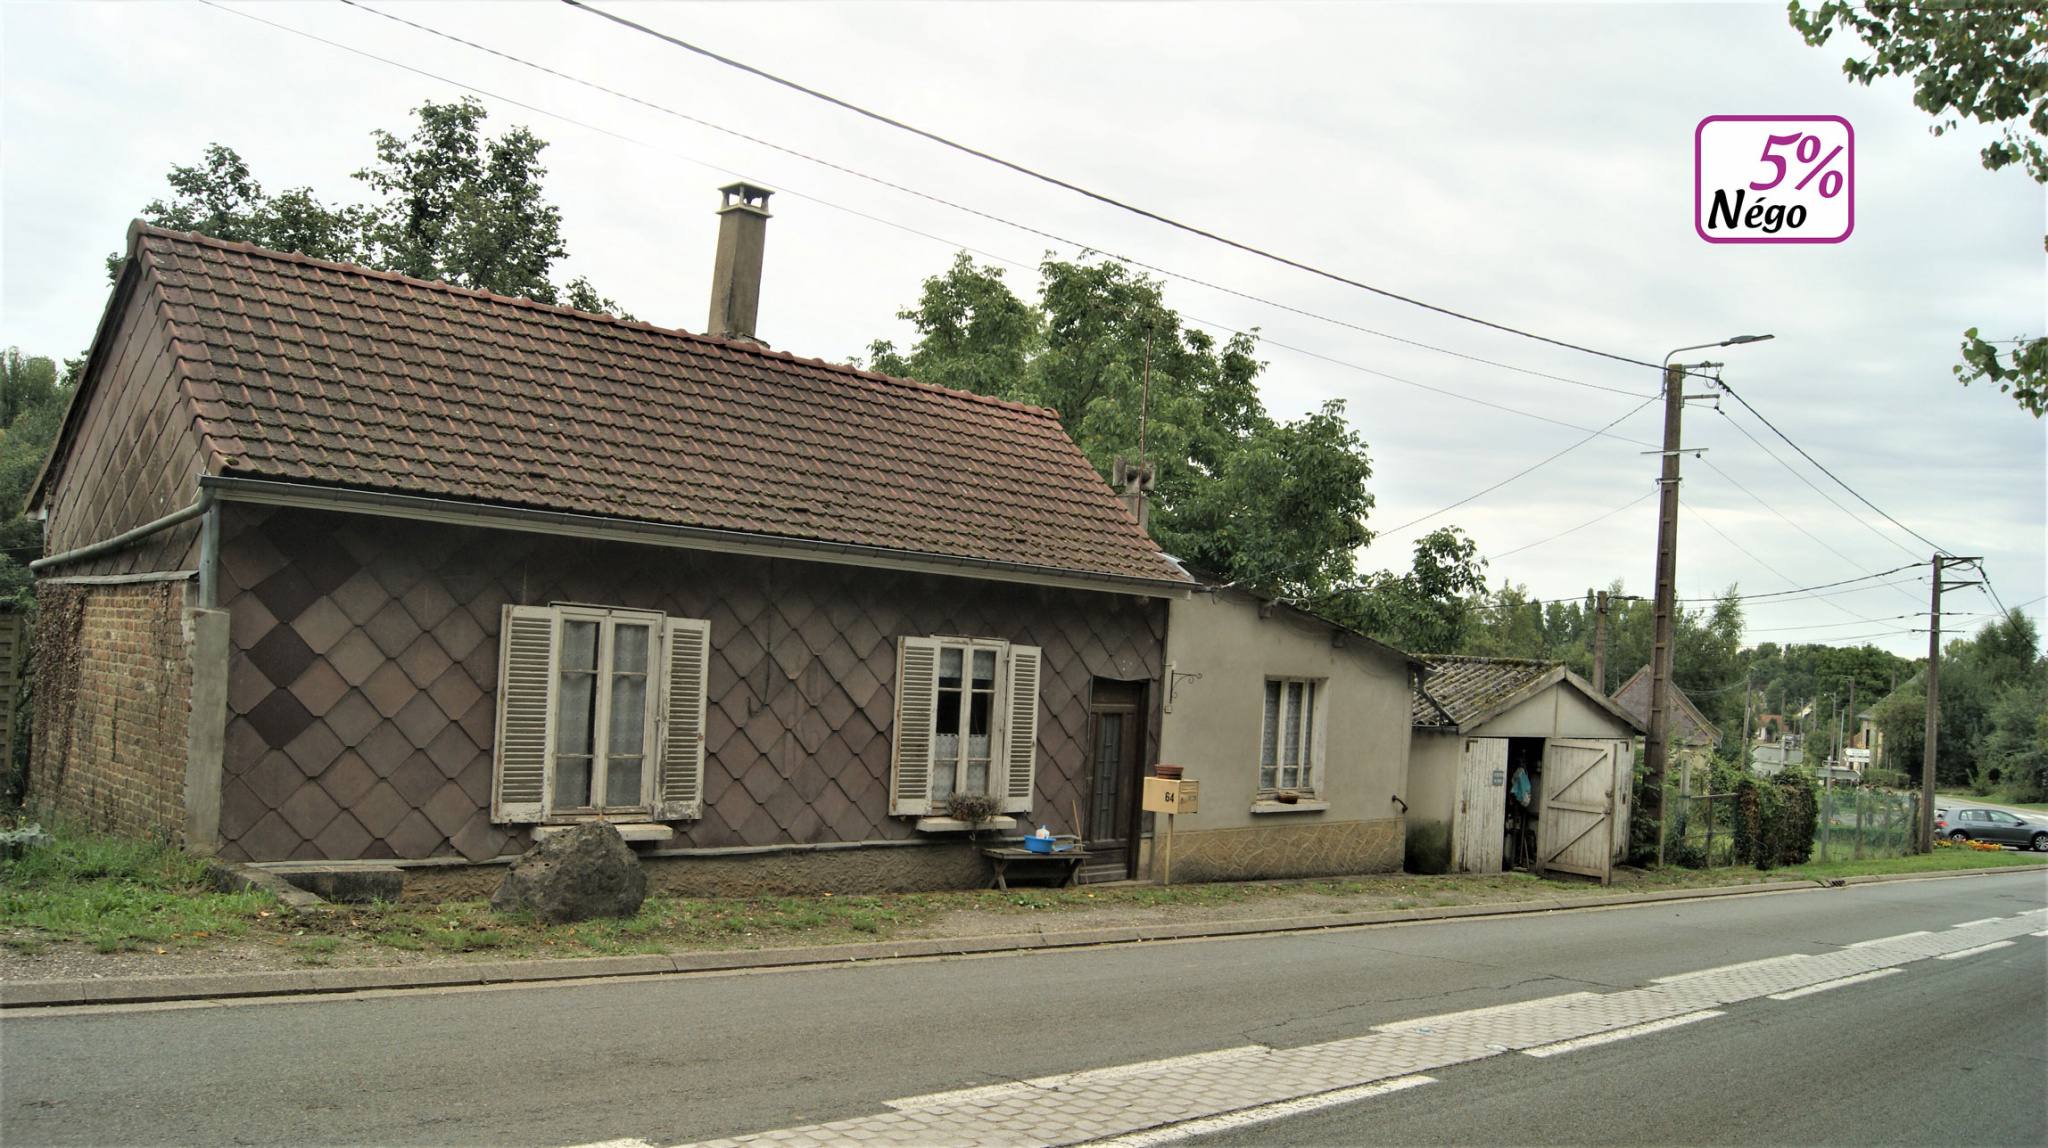 Immo80 – L'immobilier à Amiens et dans la Somme-ACHAT / VENTE Maison plain-pied à rénovée sur terrain de 850 m2 avec double garage